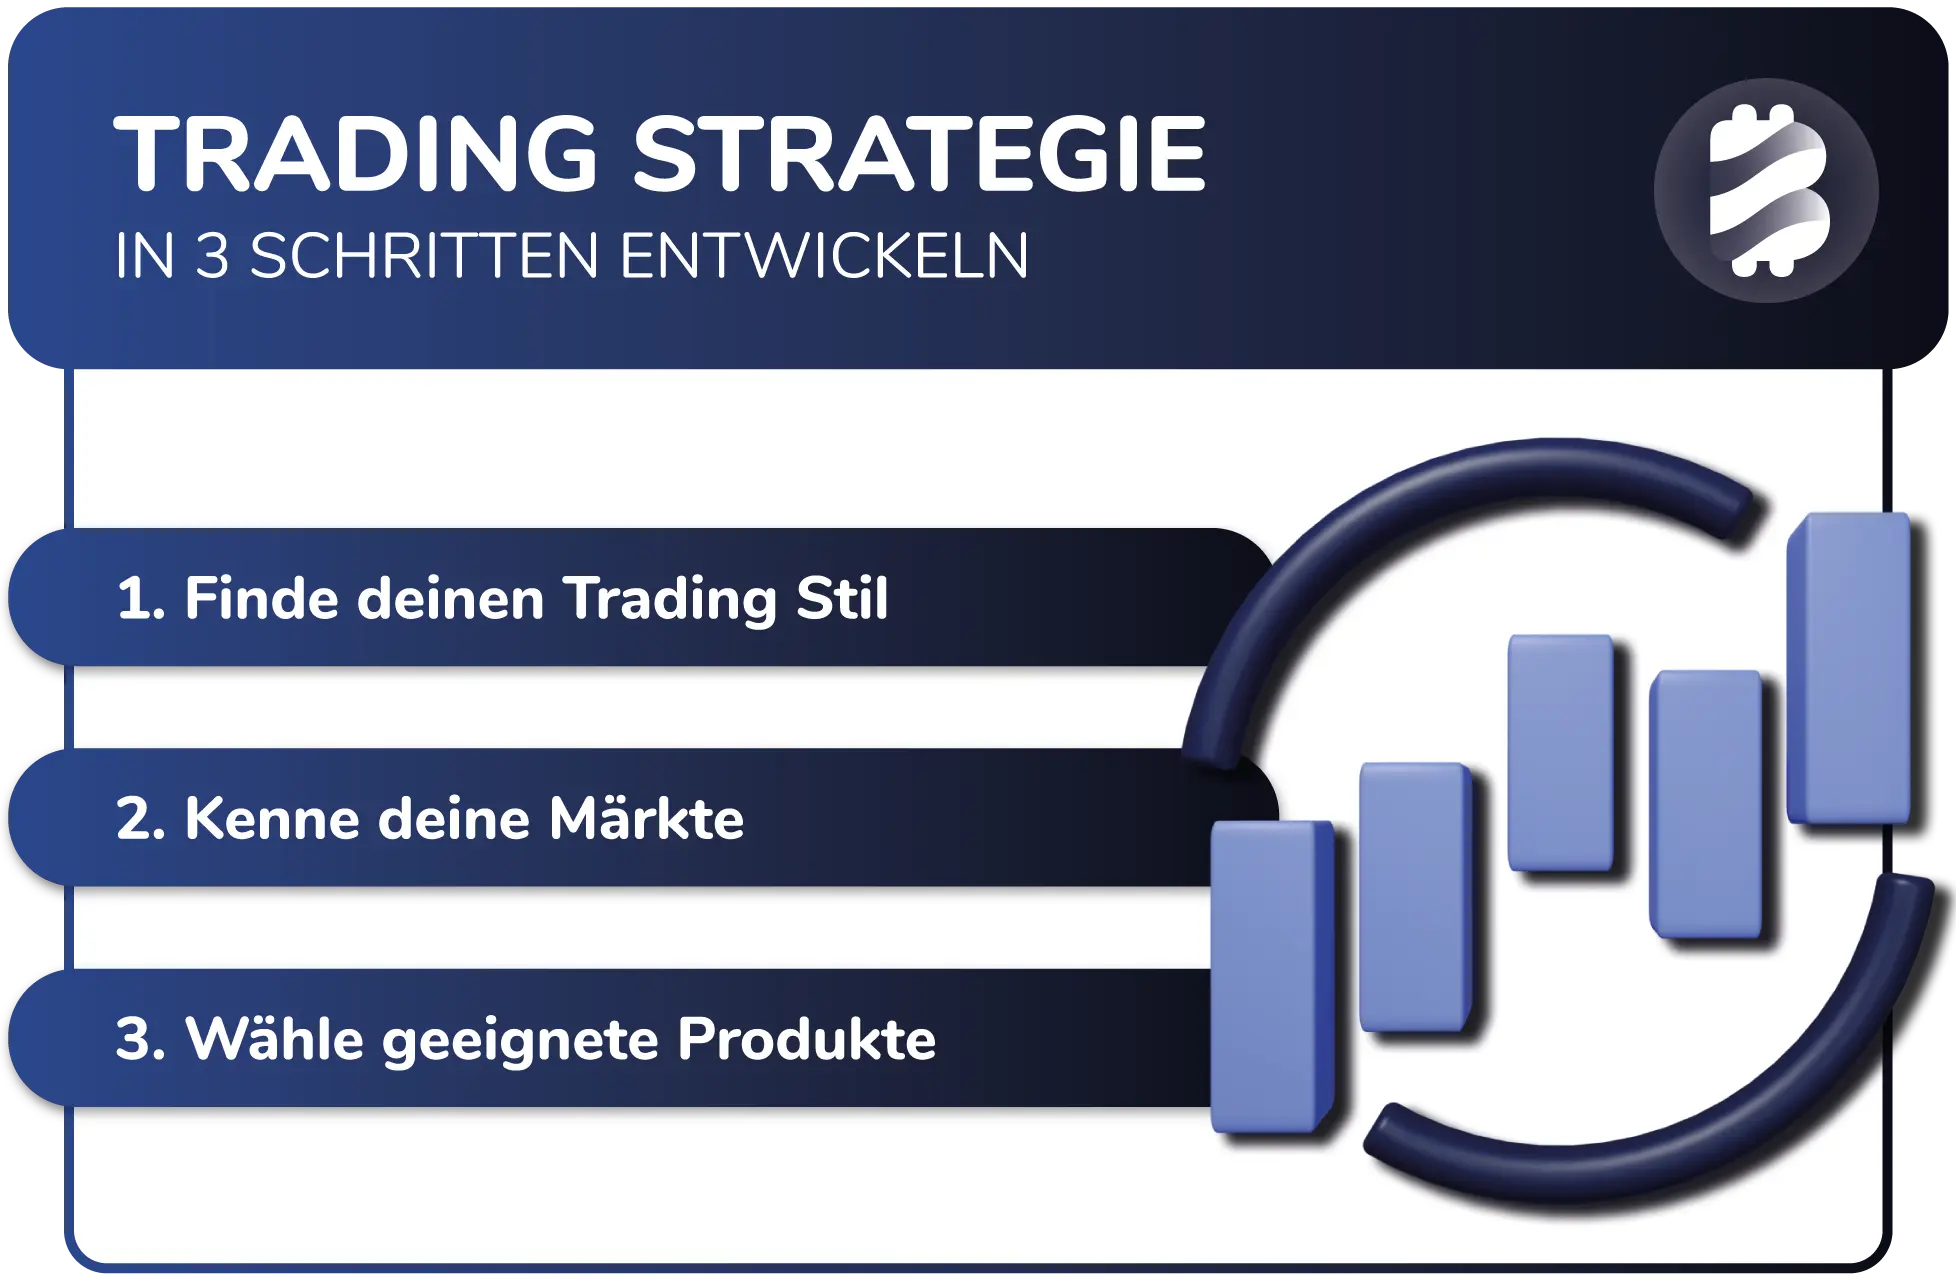 Trading Strategie entwickeln in 3 Schritten